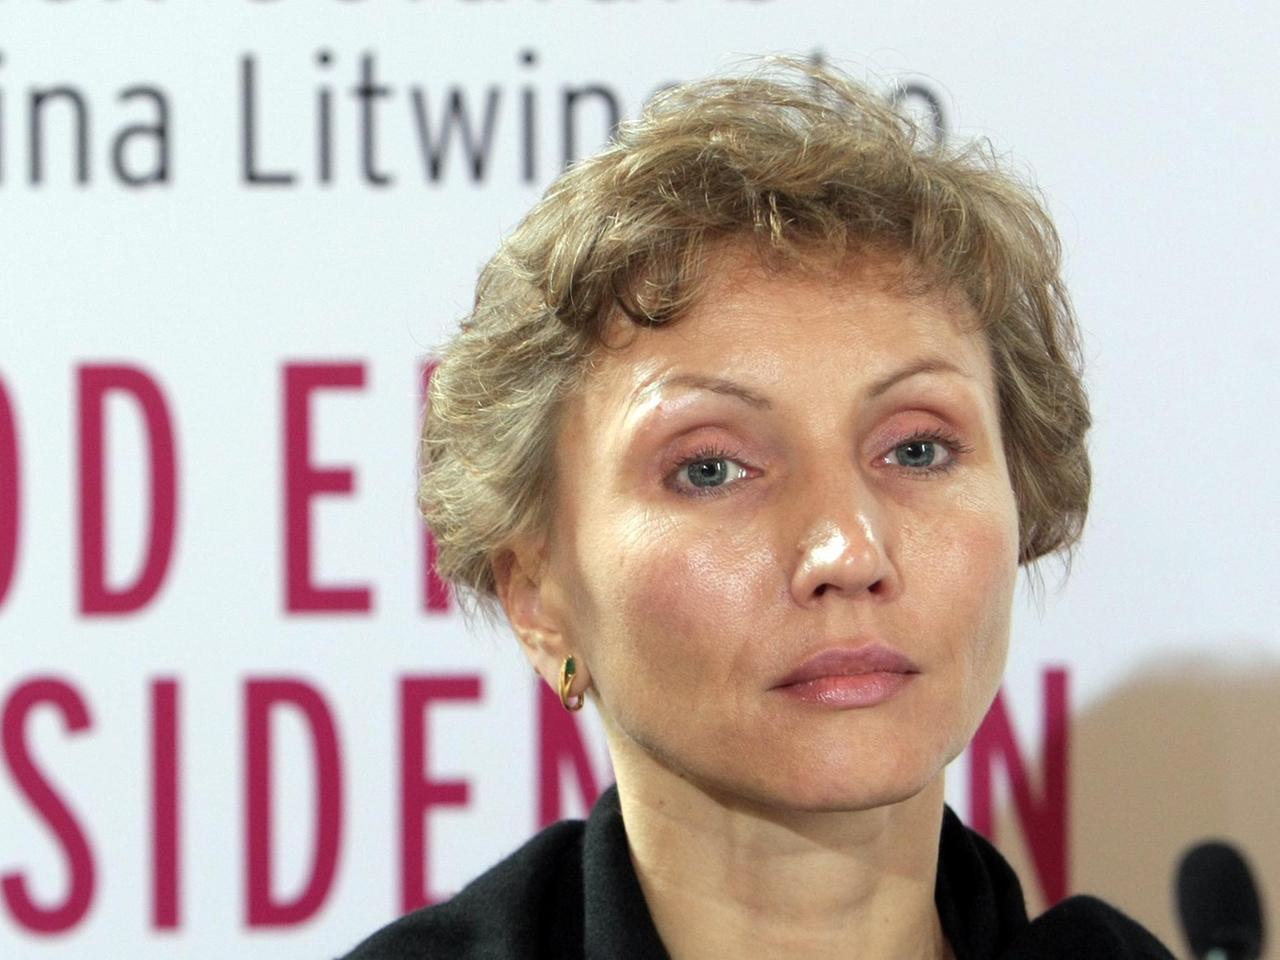 Die Witwe Alexander Litwinenkos, Marina Litwinenko, stellt am 15.06.2007 in Hamburg die deutsche Ausgabe ihres Buches "Tod eines Dissidenten" vor.